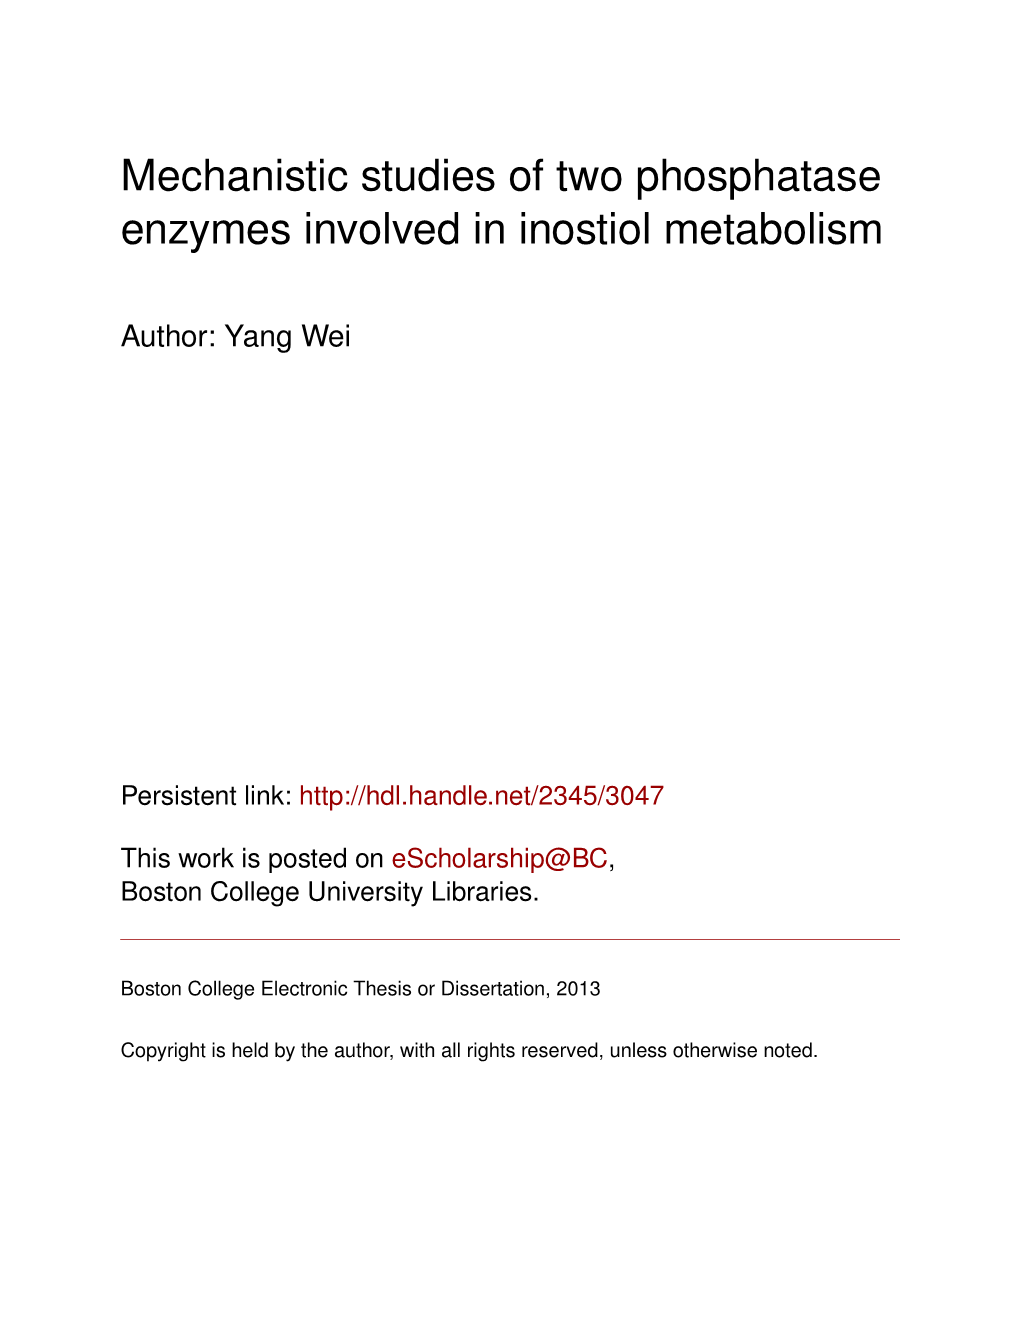 Mechanistic Studies of Two Phosphatase Enzymes Involved in Inostiol Metabolism